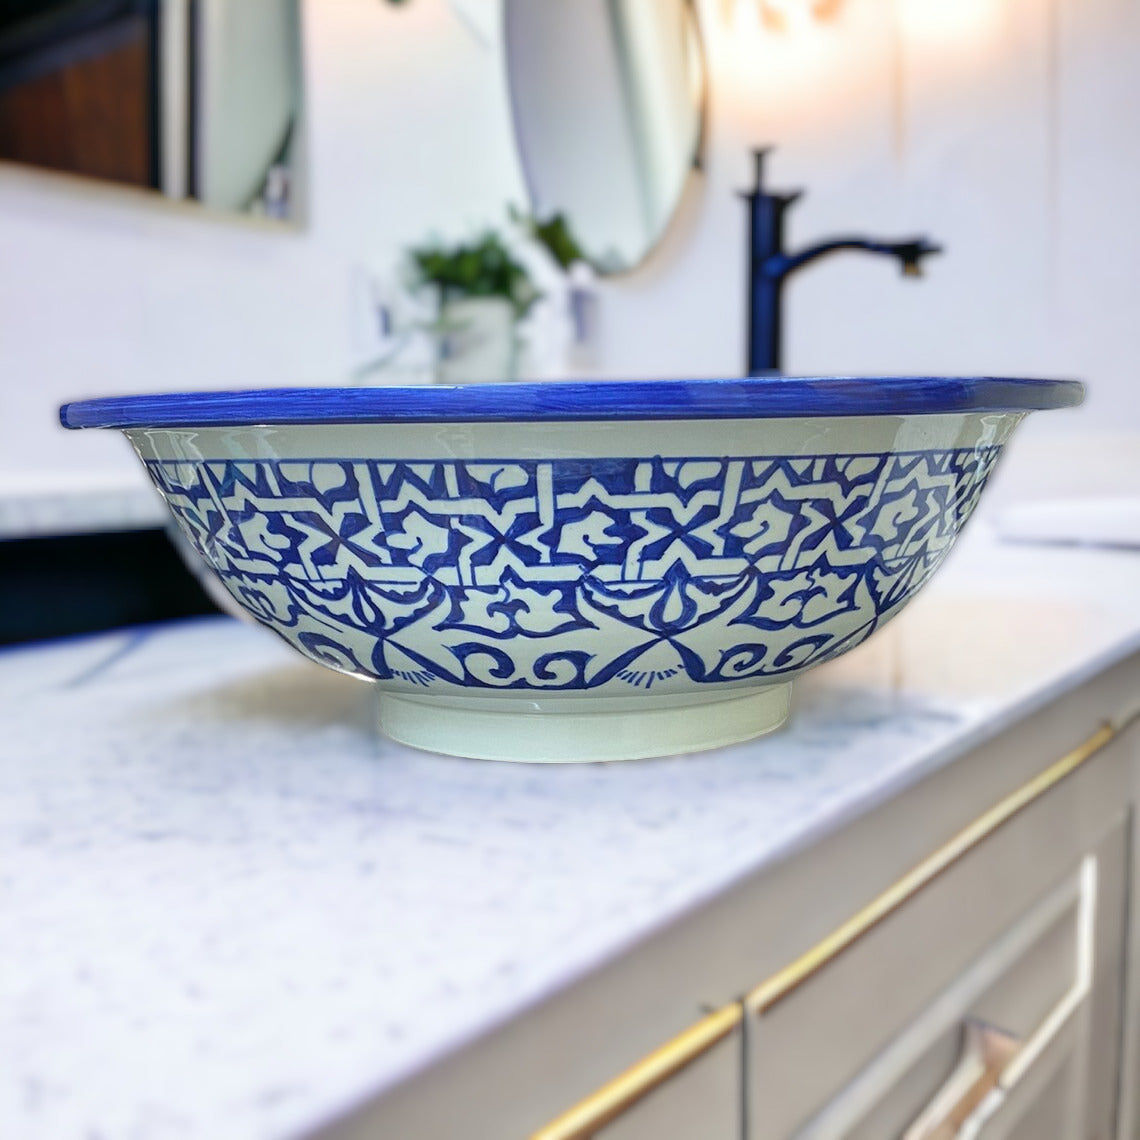 Moroccan sink | moroccan ceramic sink | bathroom sink | moroccan bathroom basin | cloakroom basin | Bleu sink #19